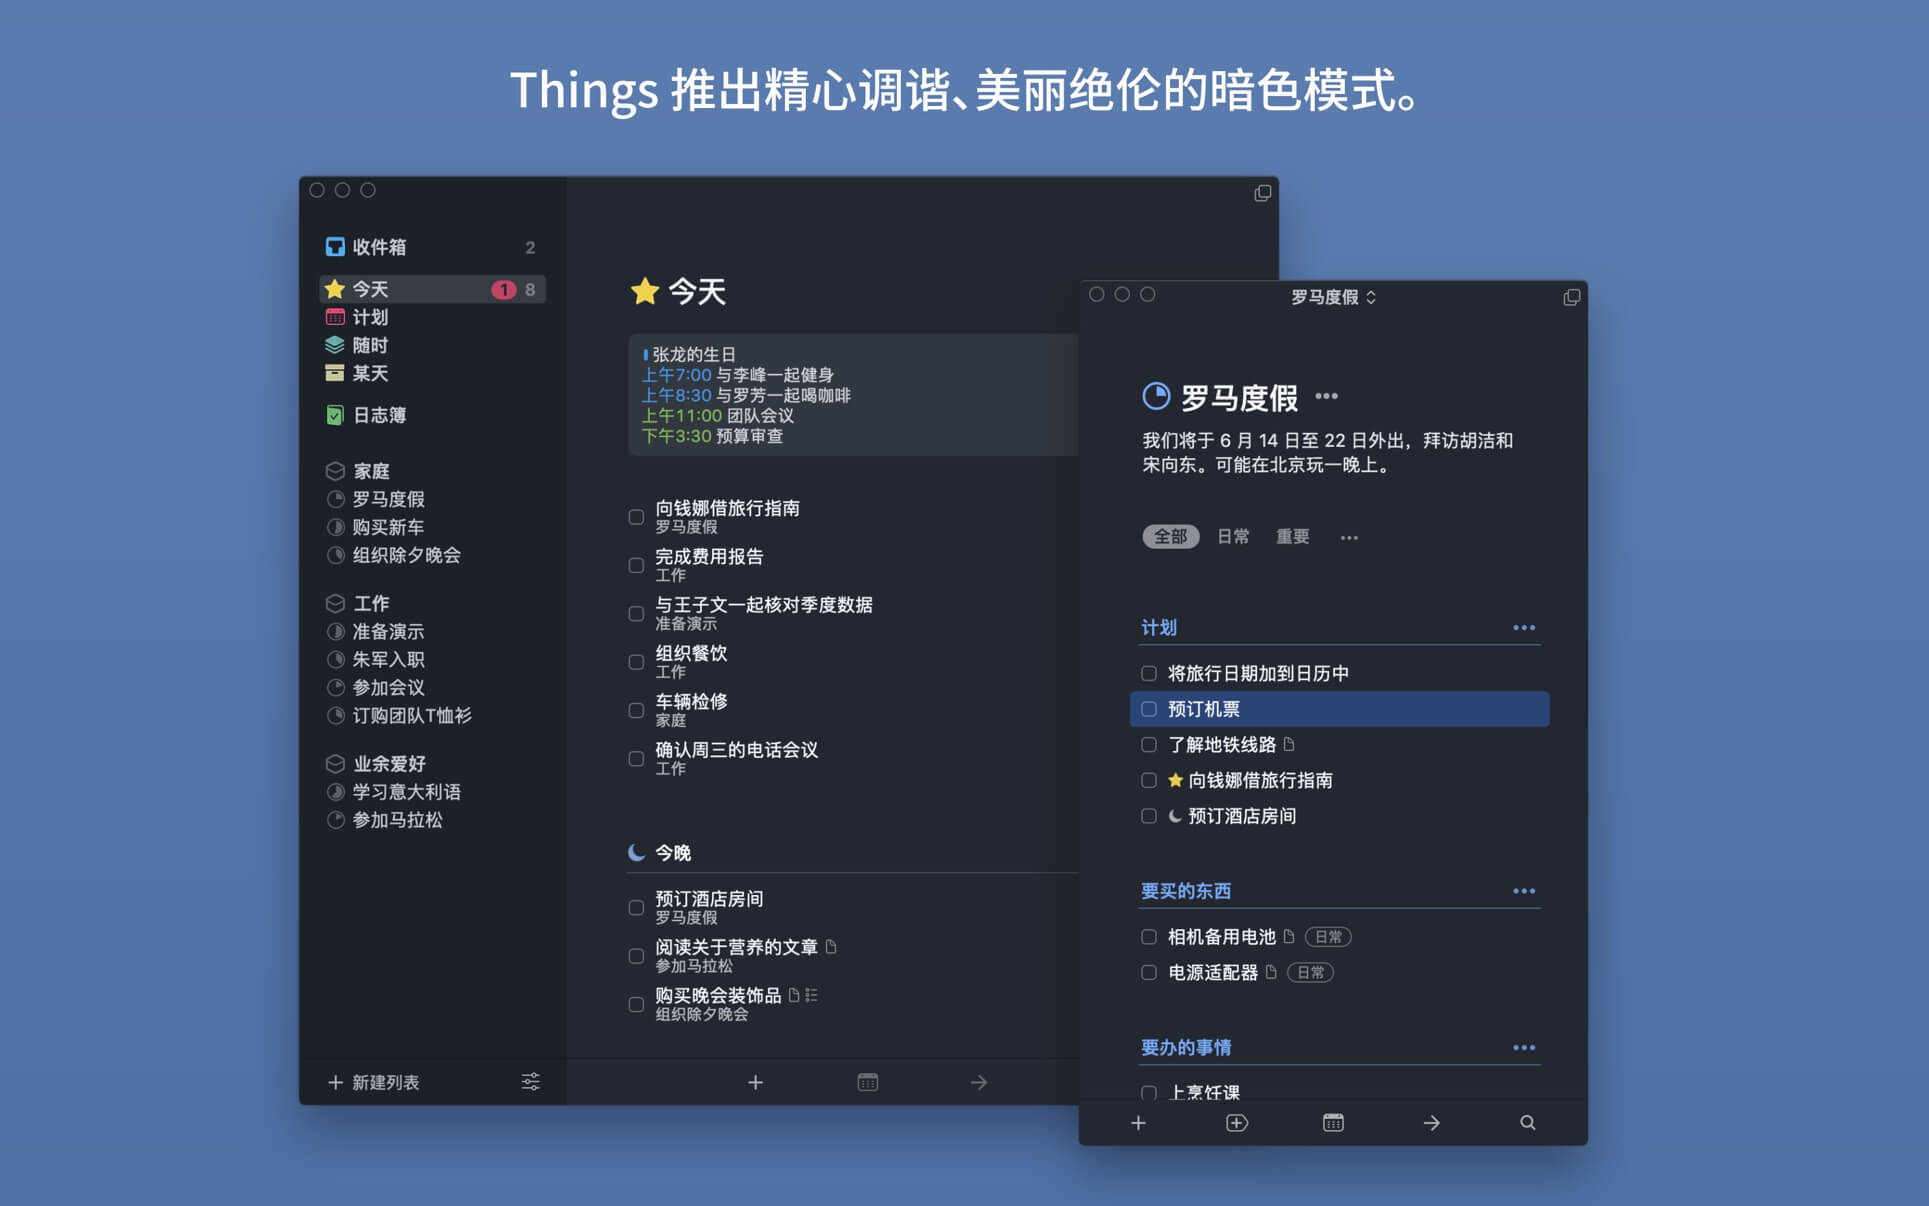 Things 3.17中文版